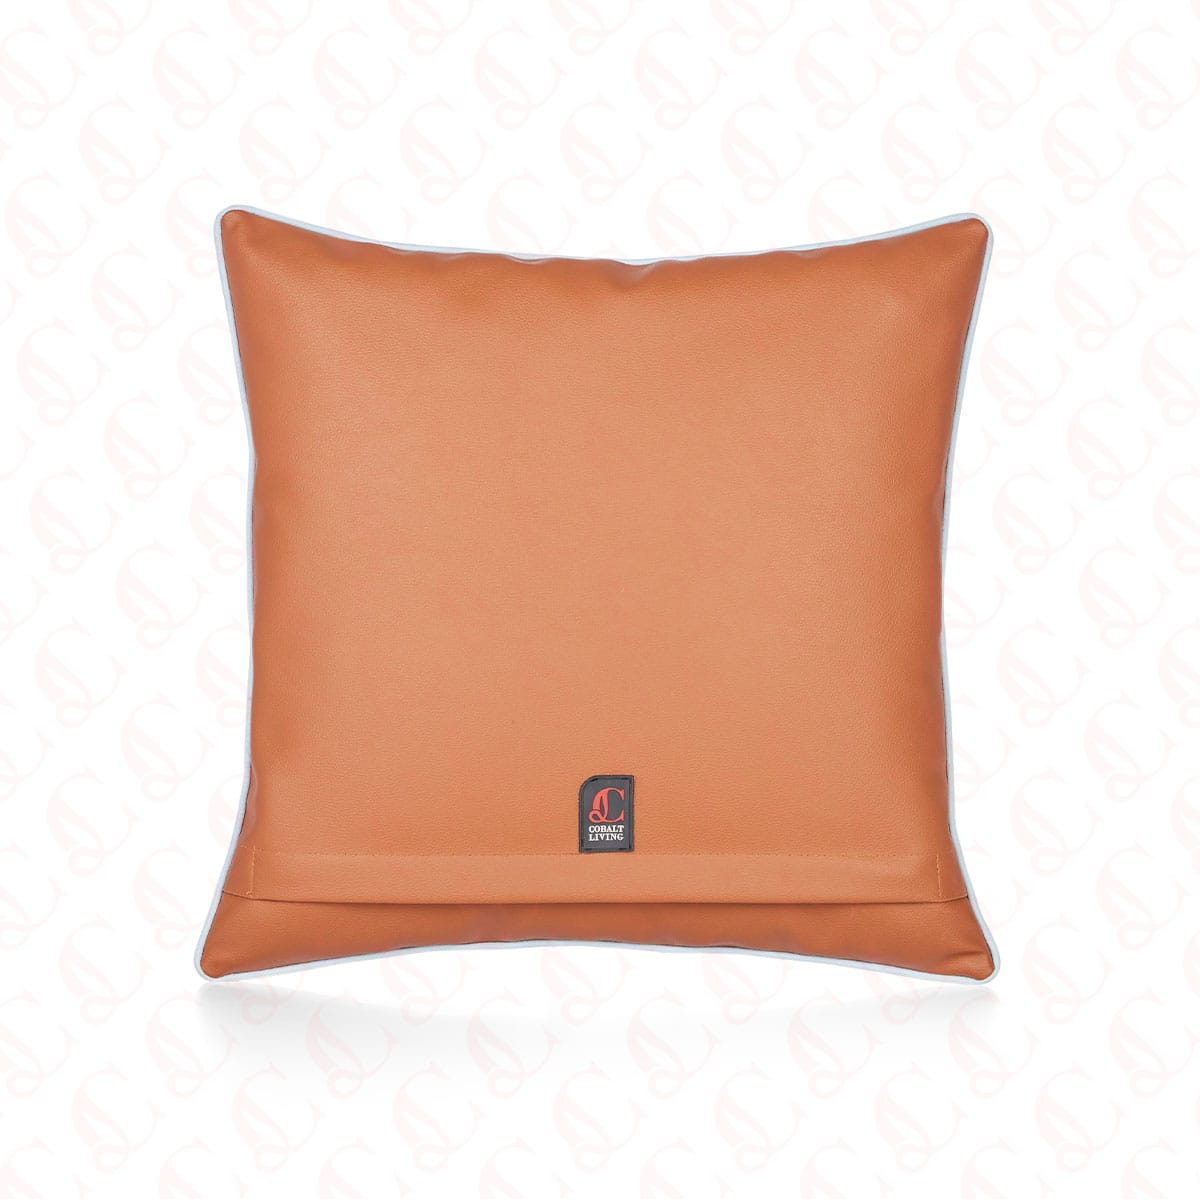 Stylish Leather Cushion Cover